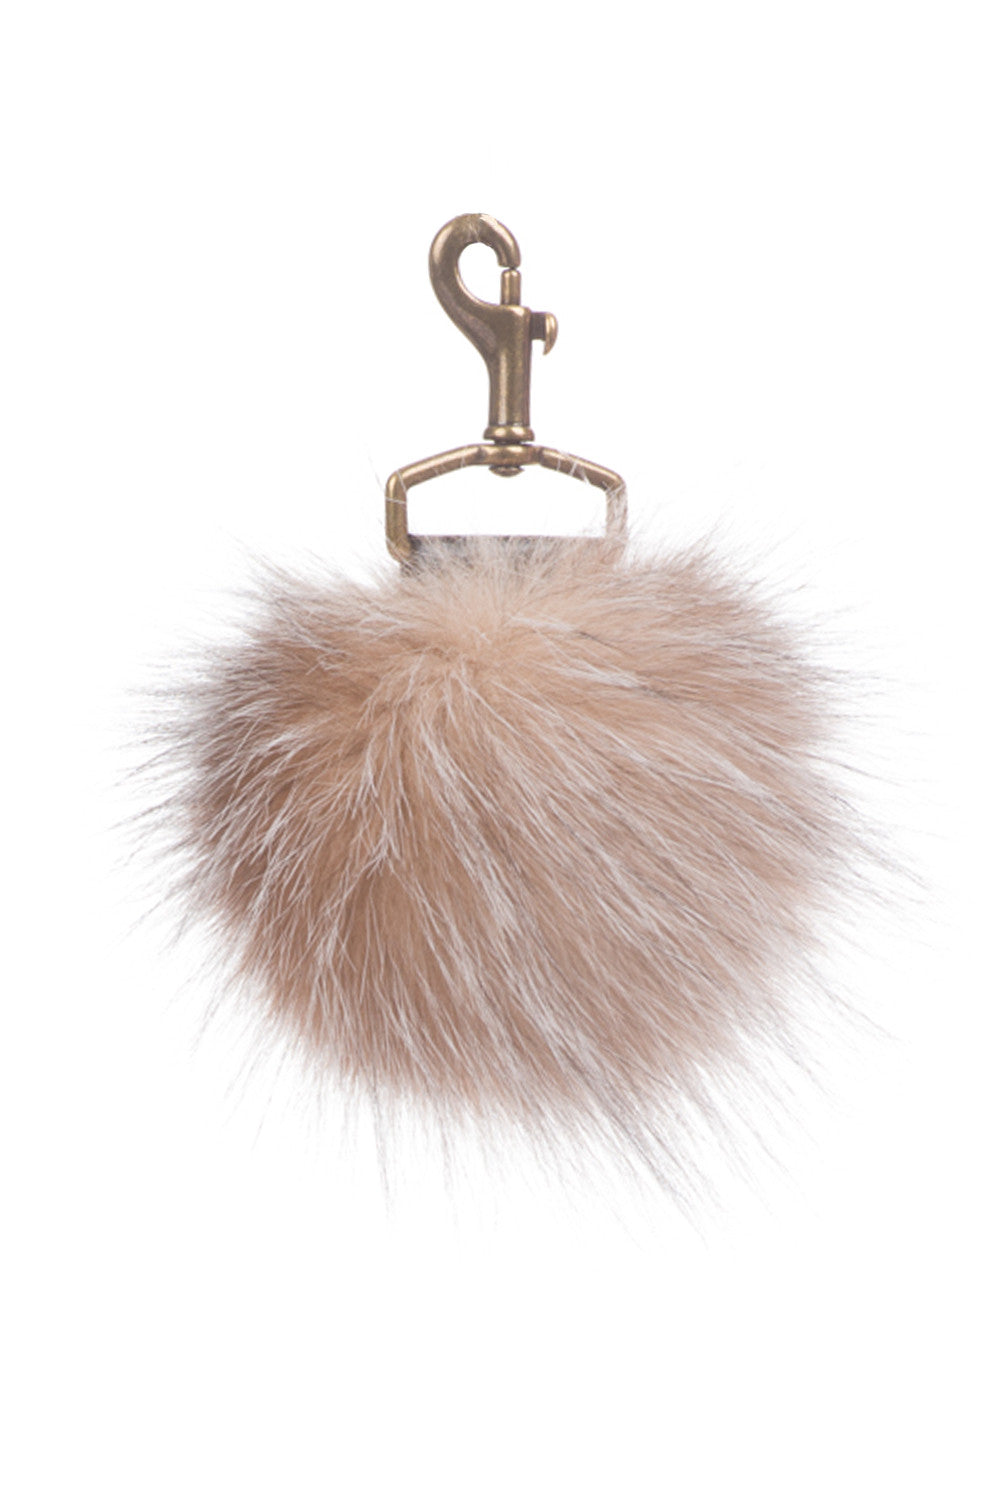 Fur Ball Key Chain